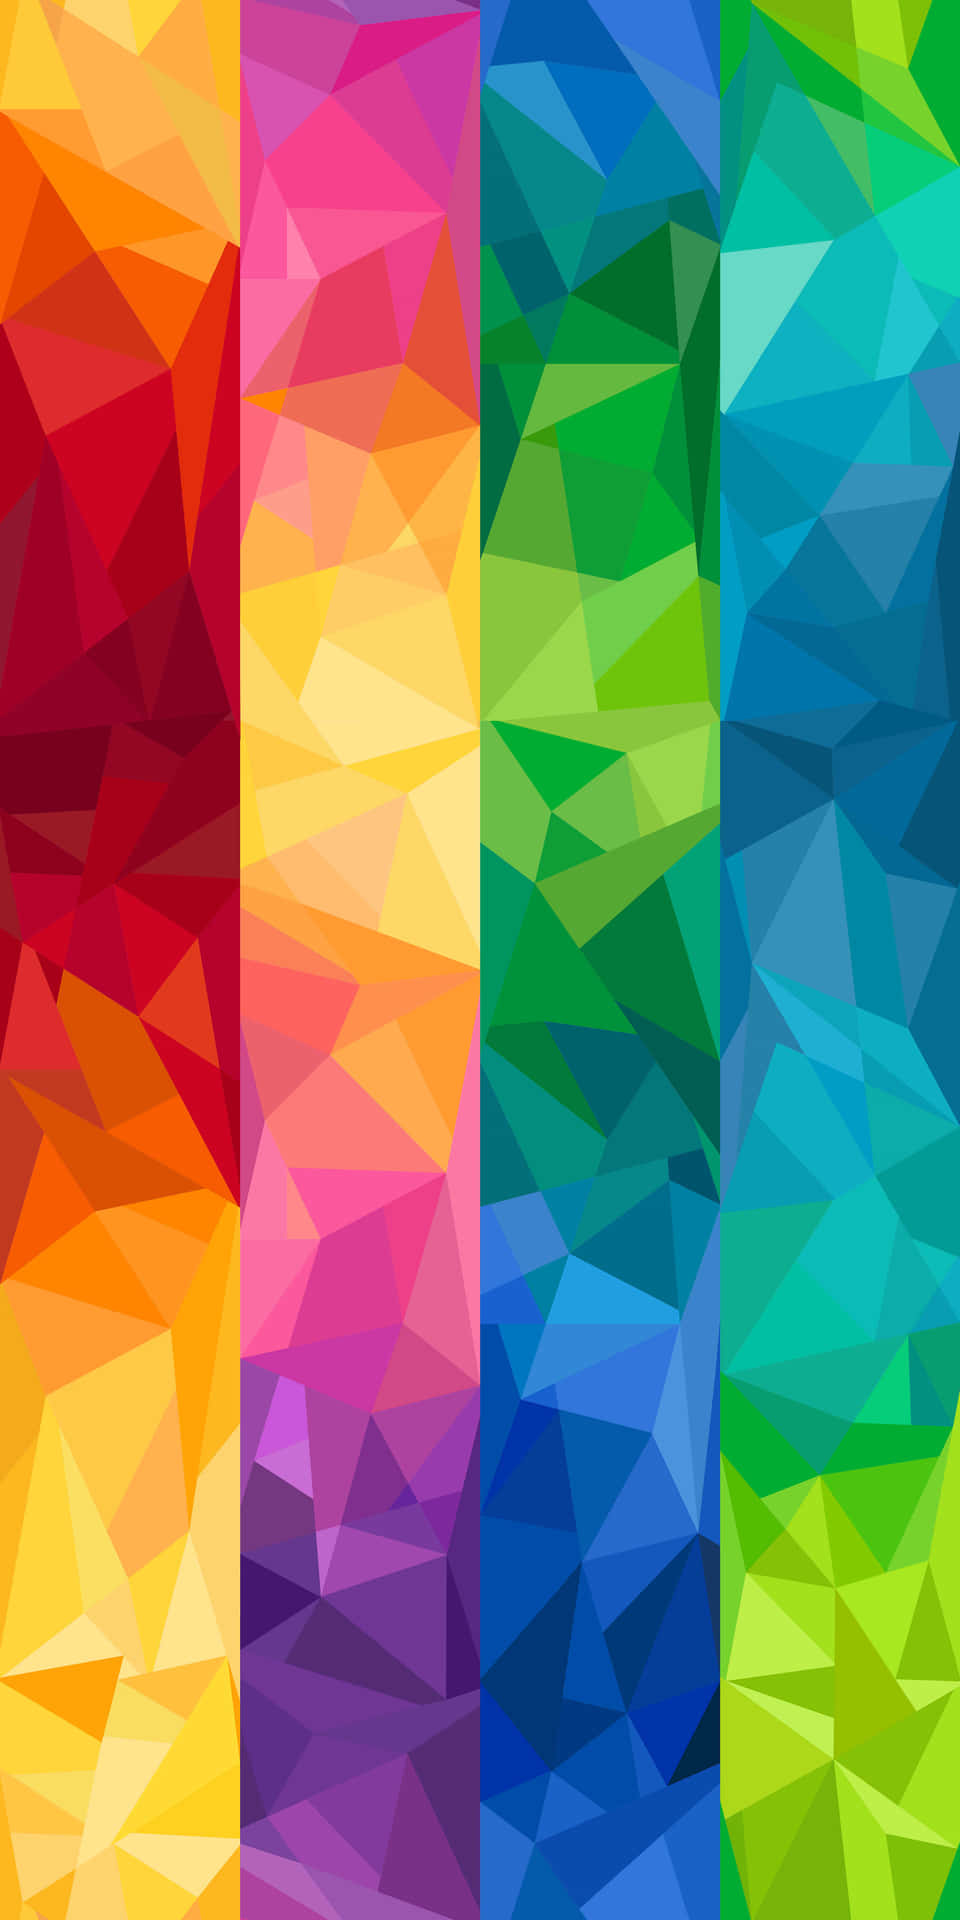 Lys farvet geometrisk mønsterbillede